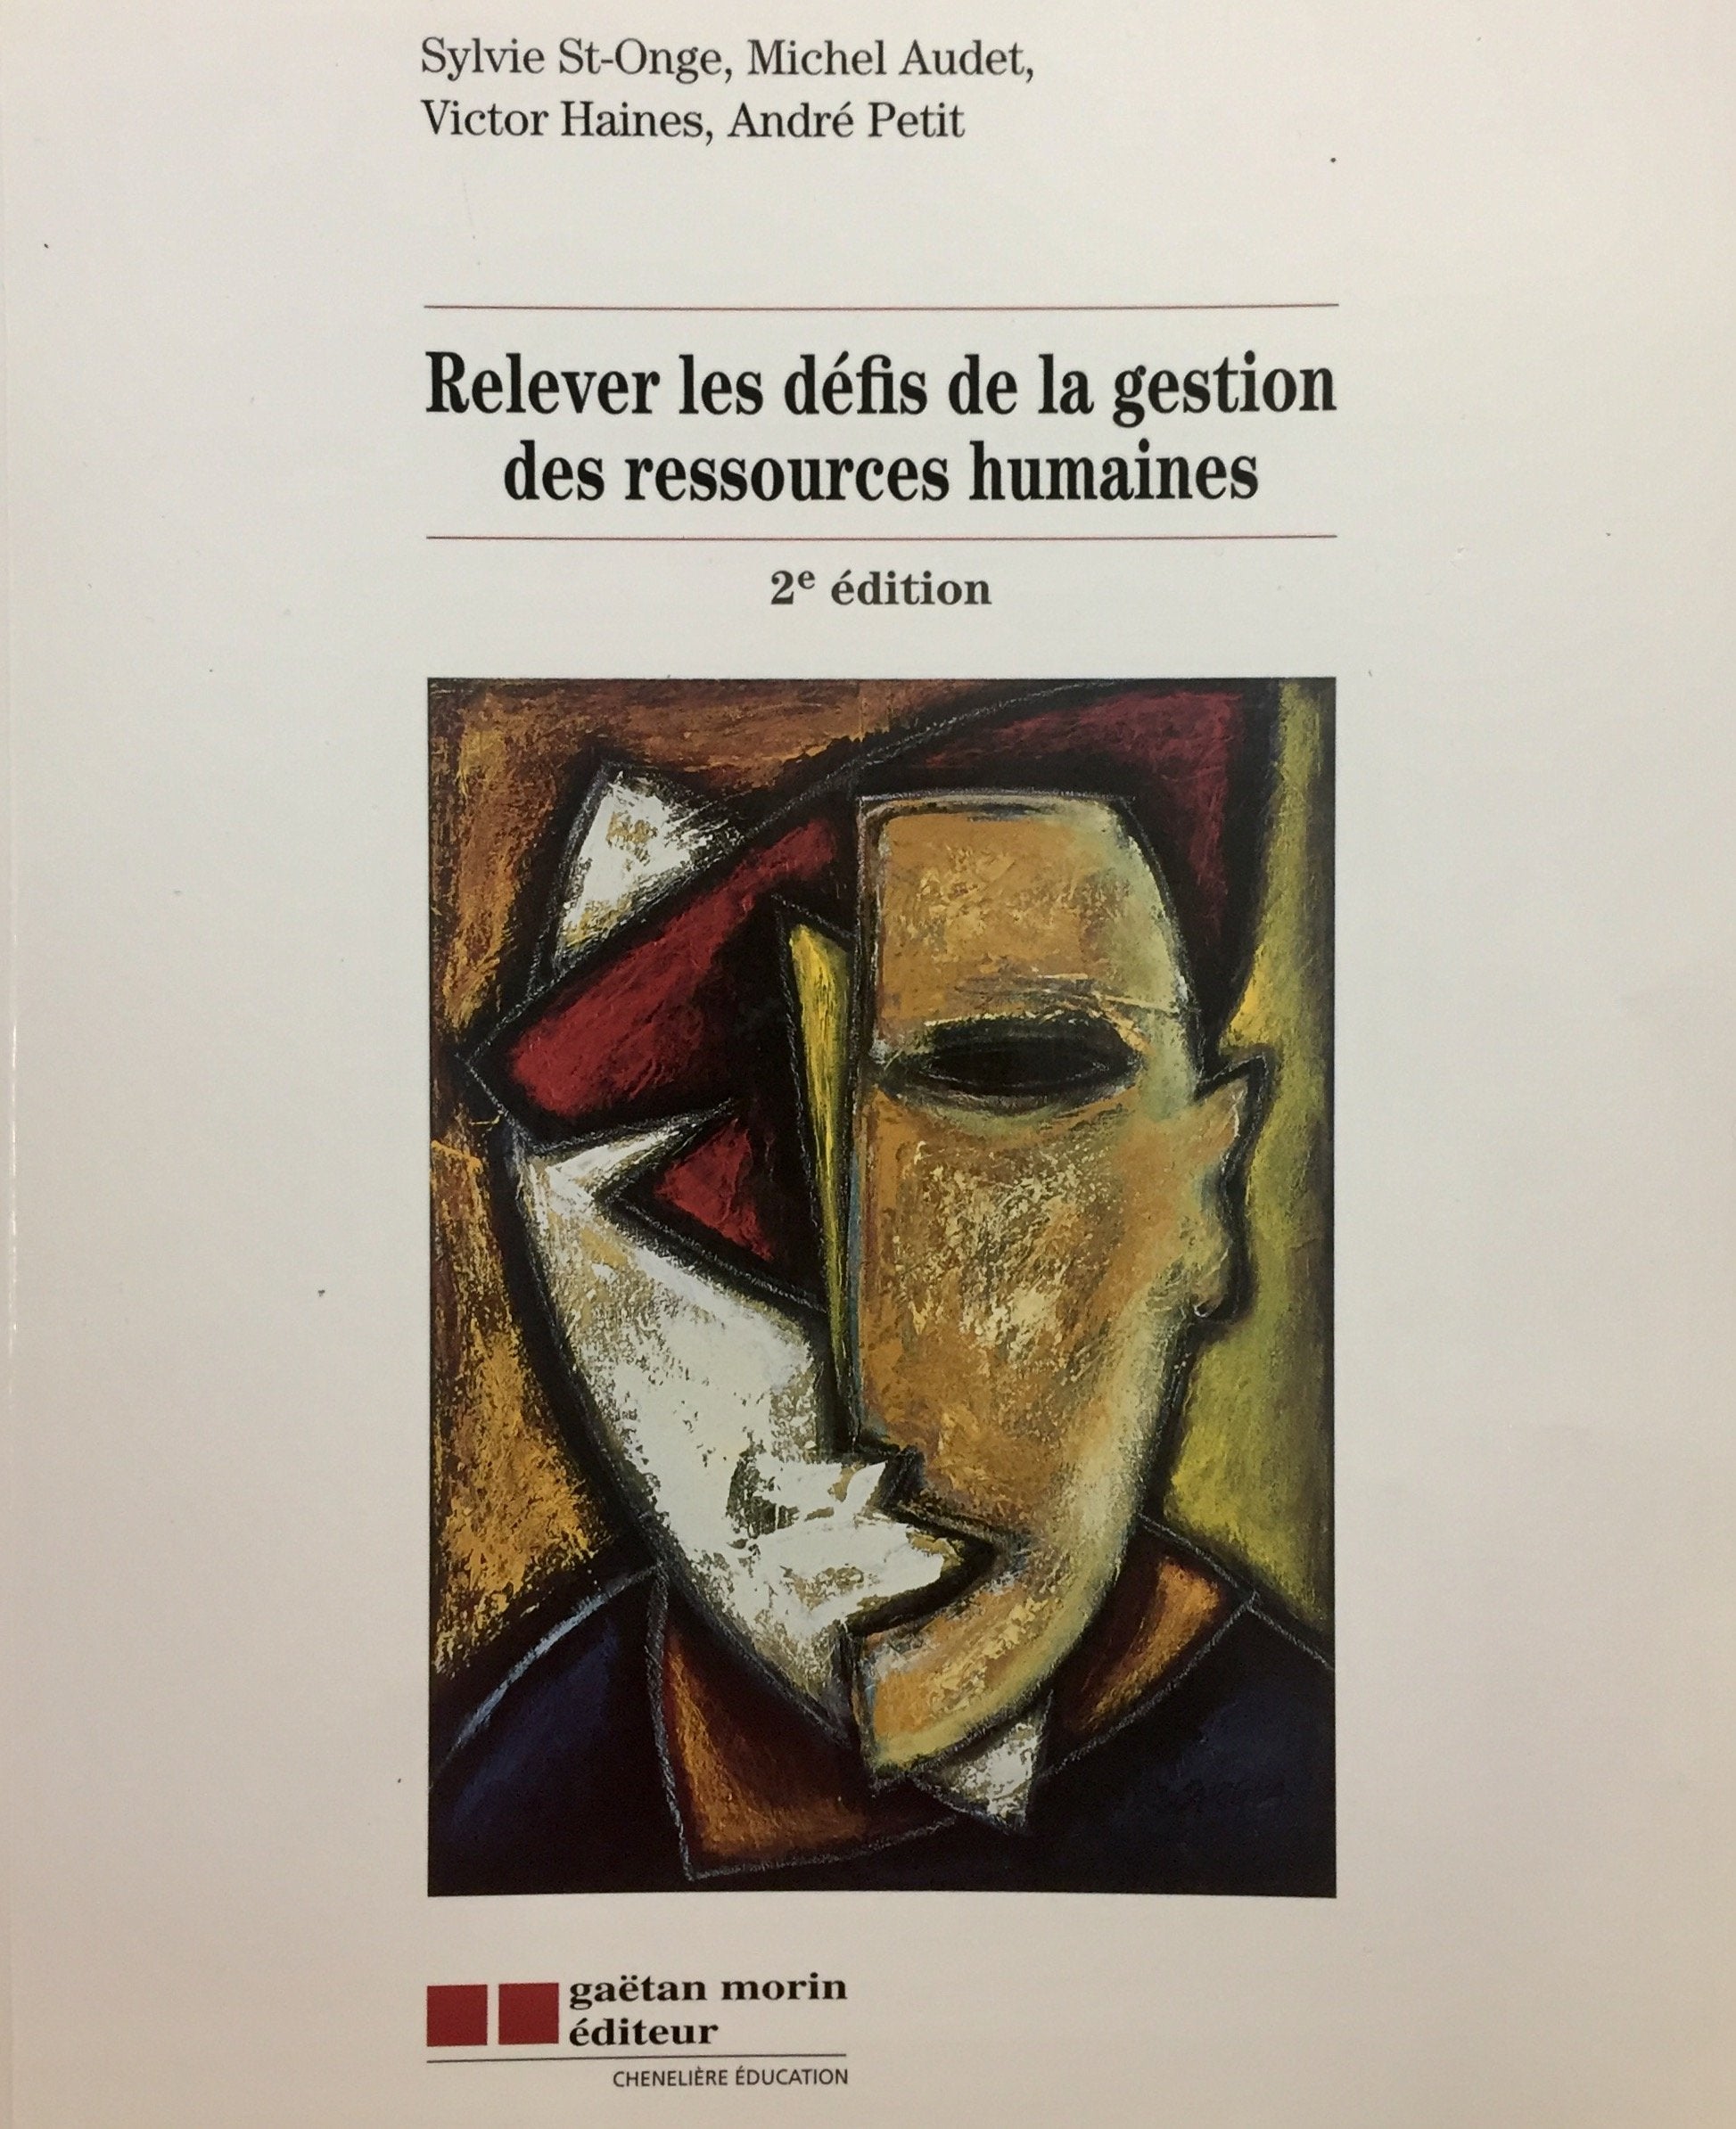 Livre ISBN 2891058666 Relever les défis de la gestion des ressources humaines (2e édition) (Sylvie St-Onge)